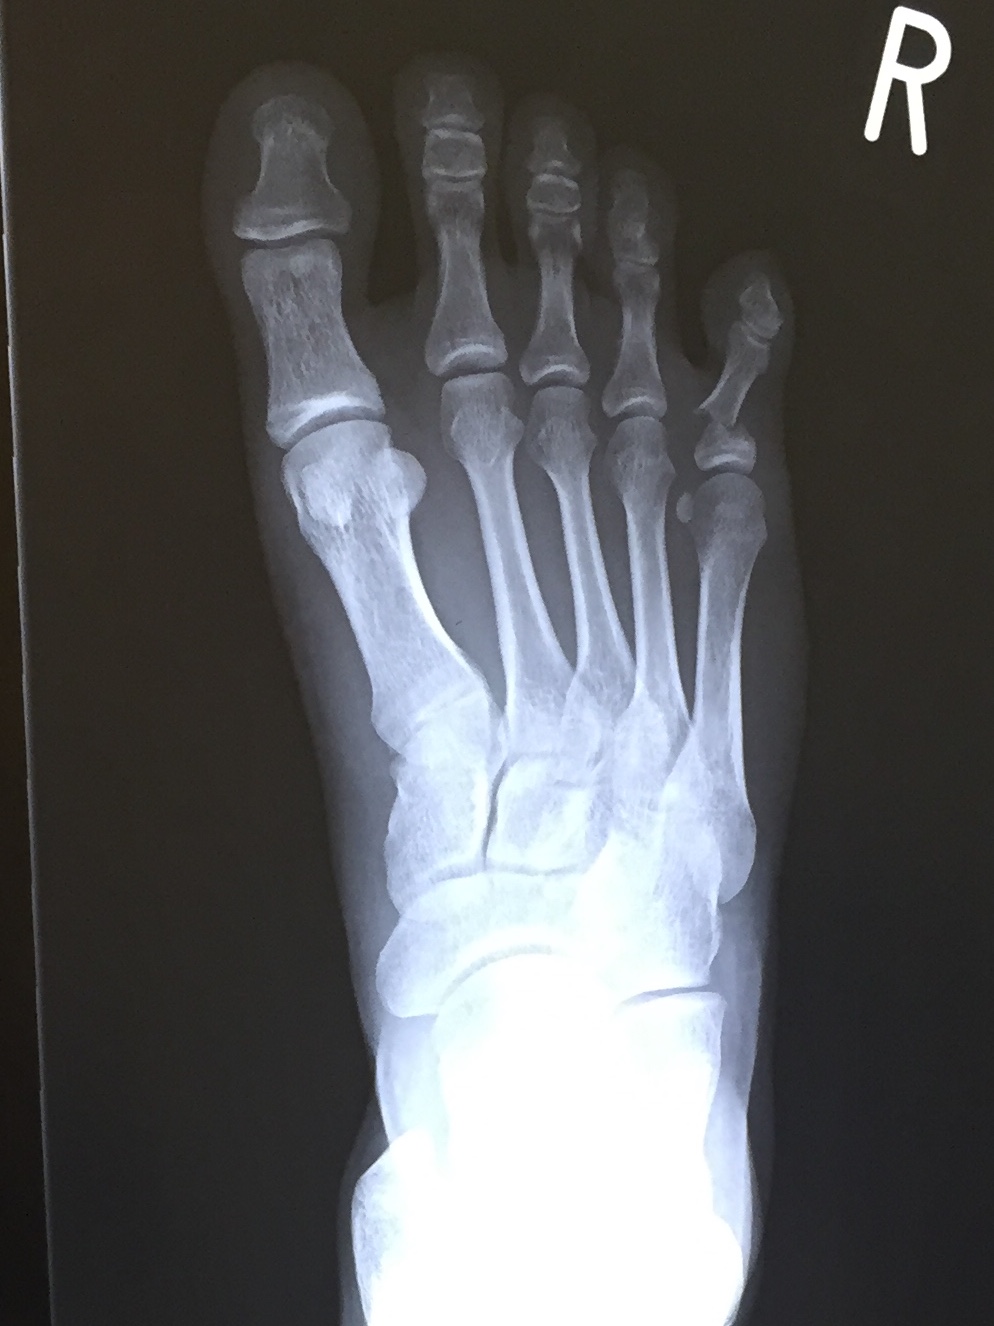 足の小指を壁の出っ張りに強打 右足第5基節骨骨折 山梨県甲府市の整骨 整体 くぼた整骨院